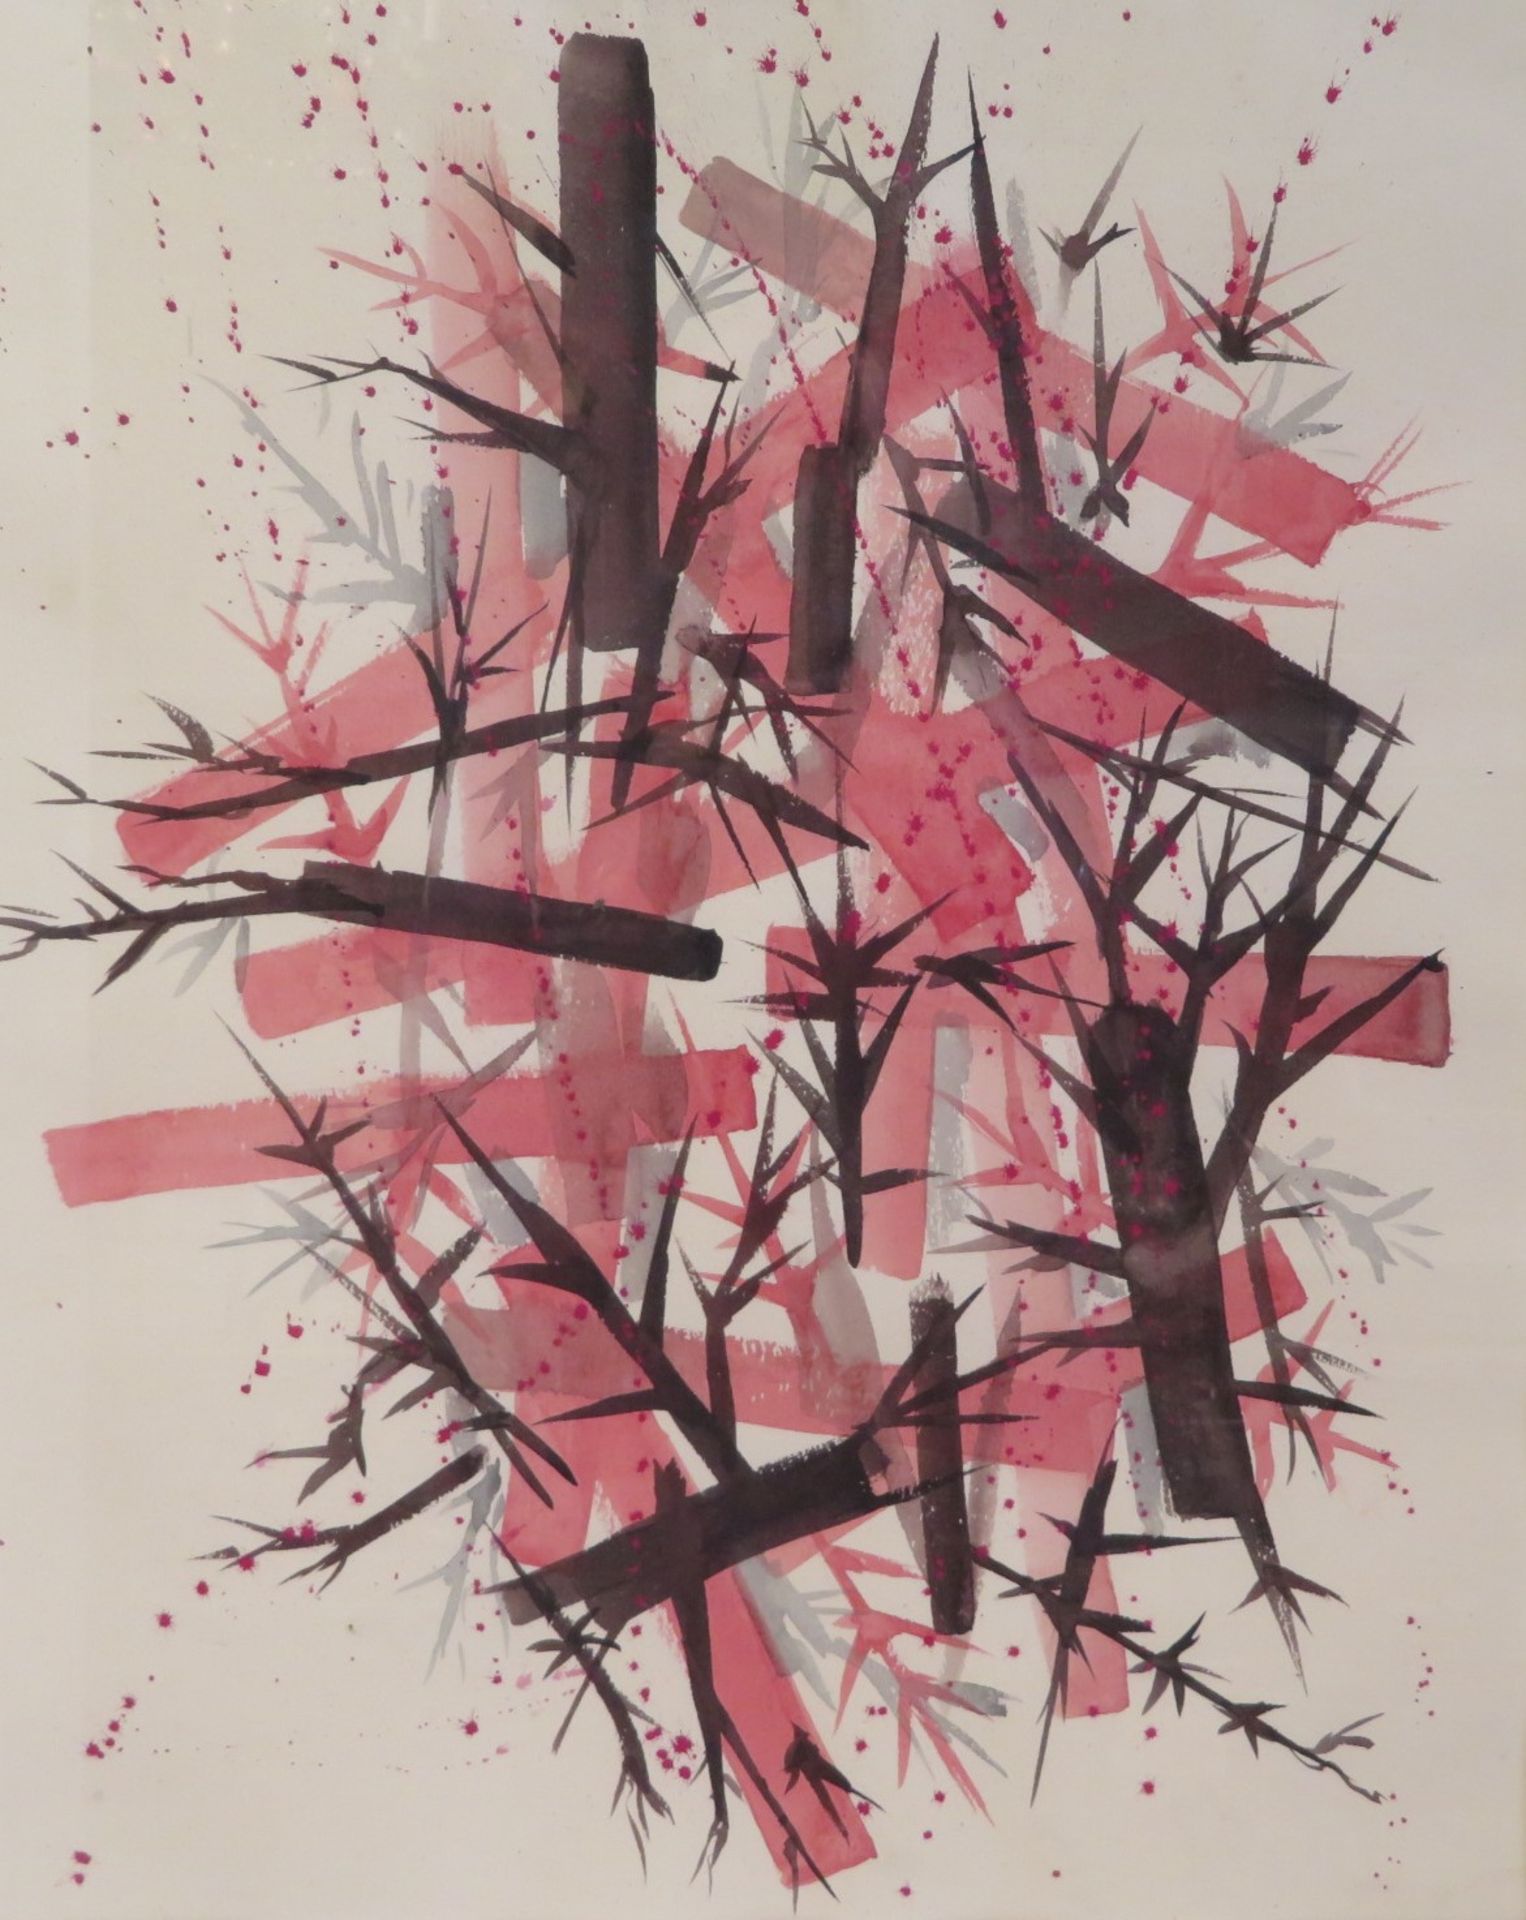 Unbekannt, 1960/70er Jahre, "Komposition in Rosa und Braun", Aquarell, 49 x 61 cm, R. [76 x 87 cm]